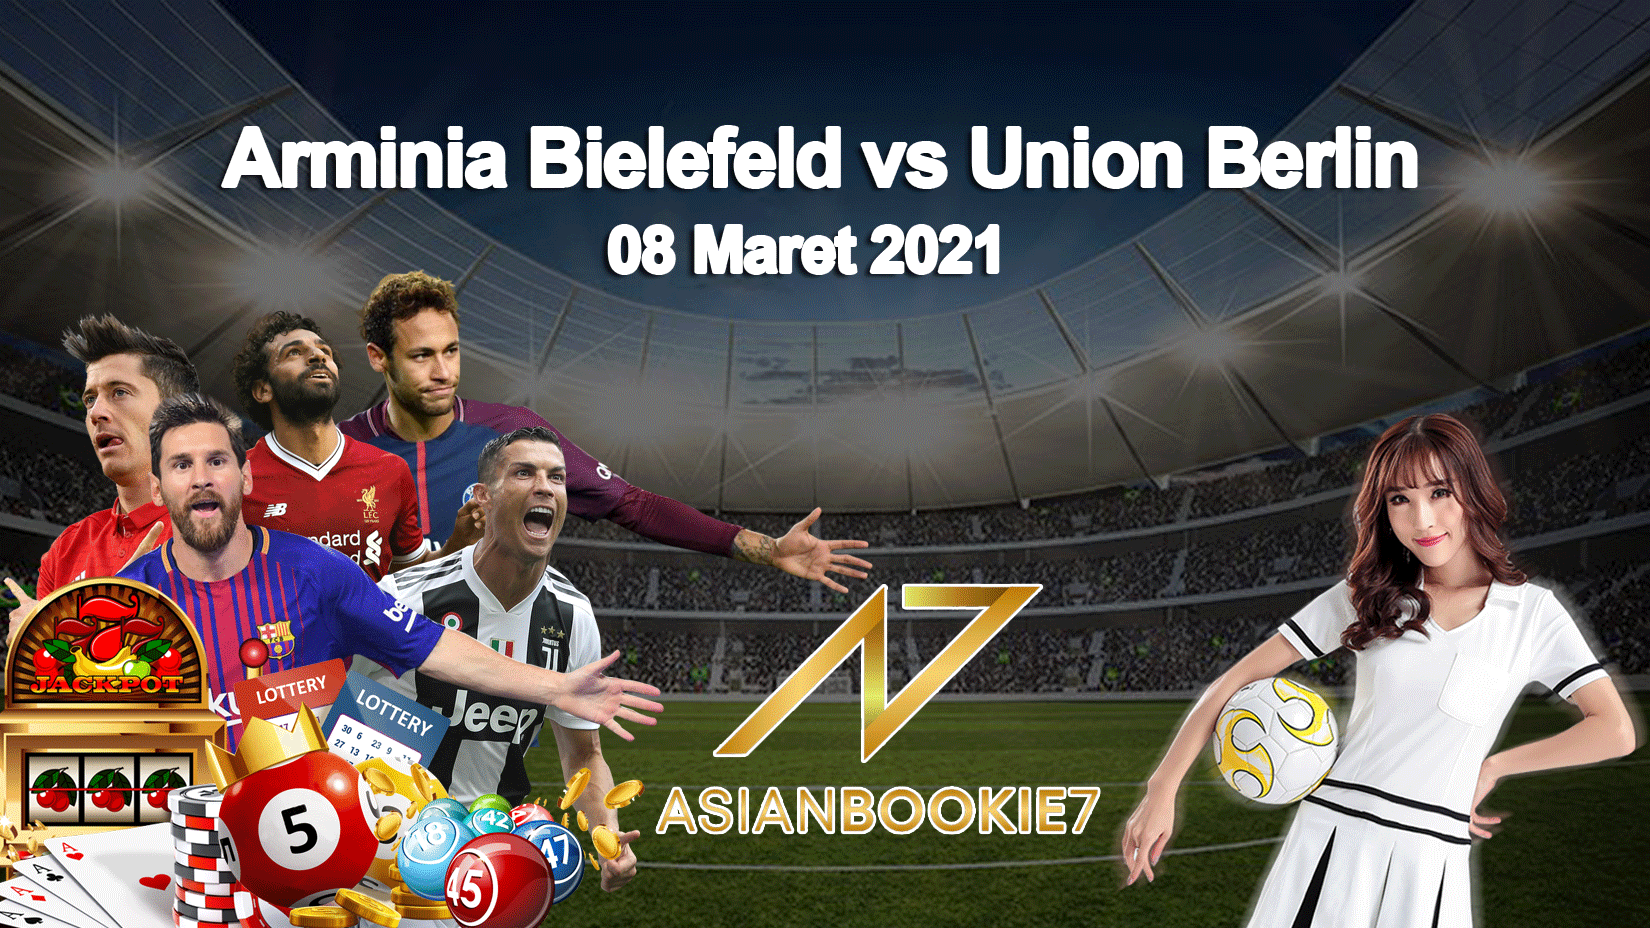 Prediksi-Arminia-Bielefeld-vs-Union-Berlin-08-Maret-2021